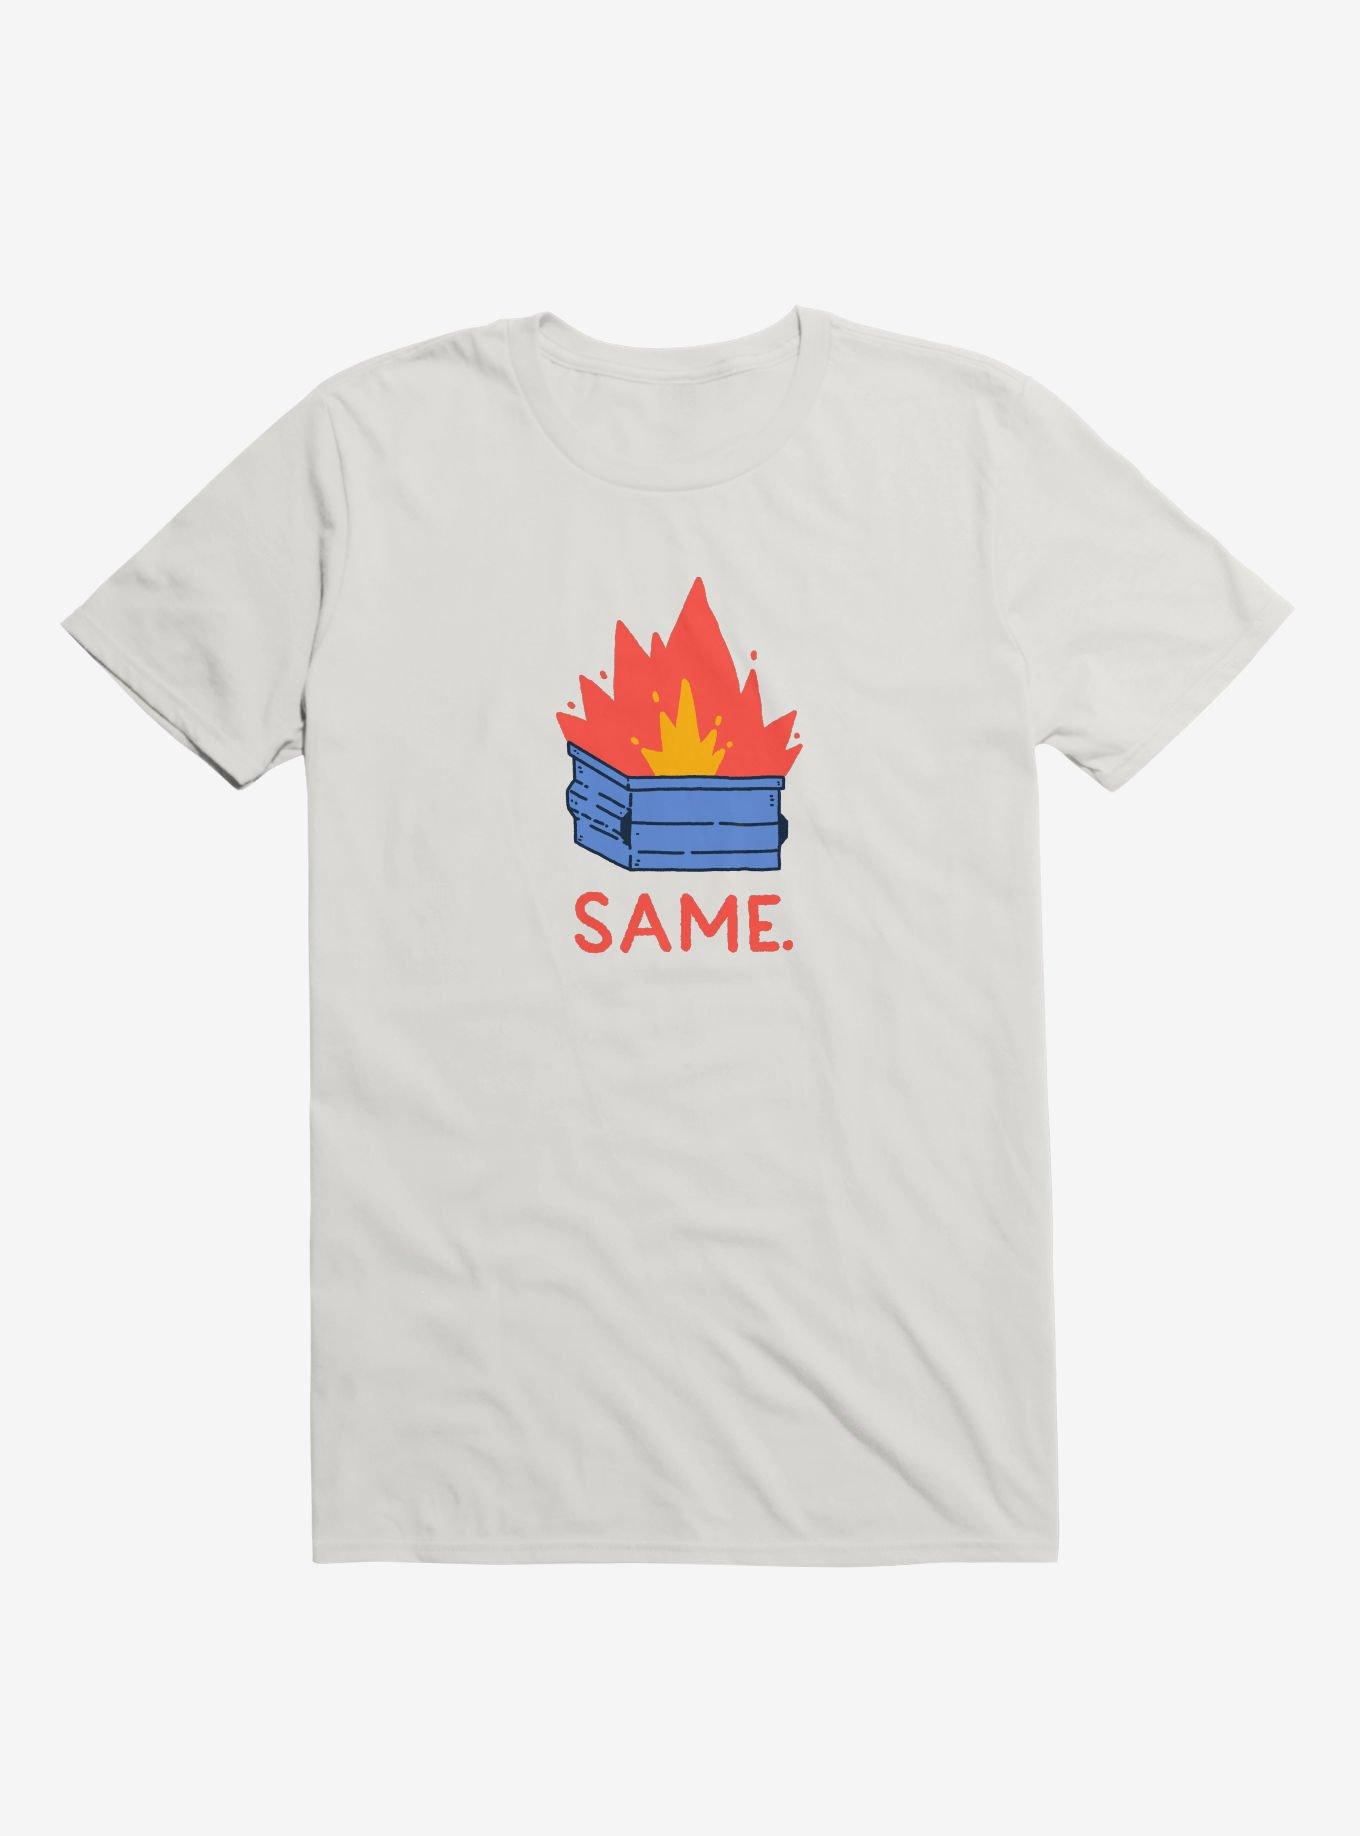 Same. T-Shirt